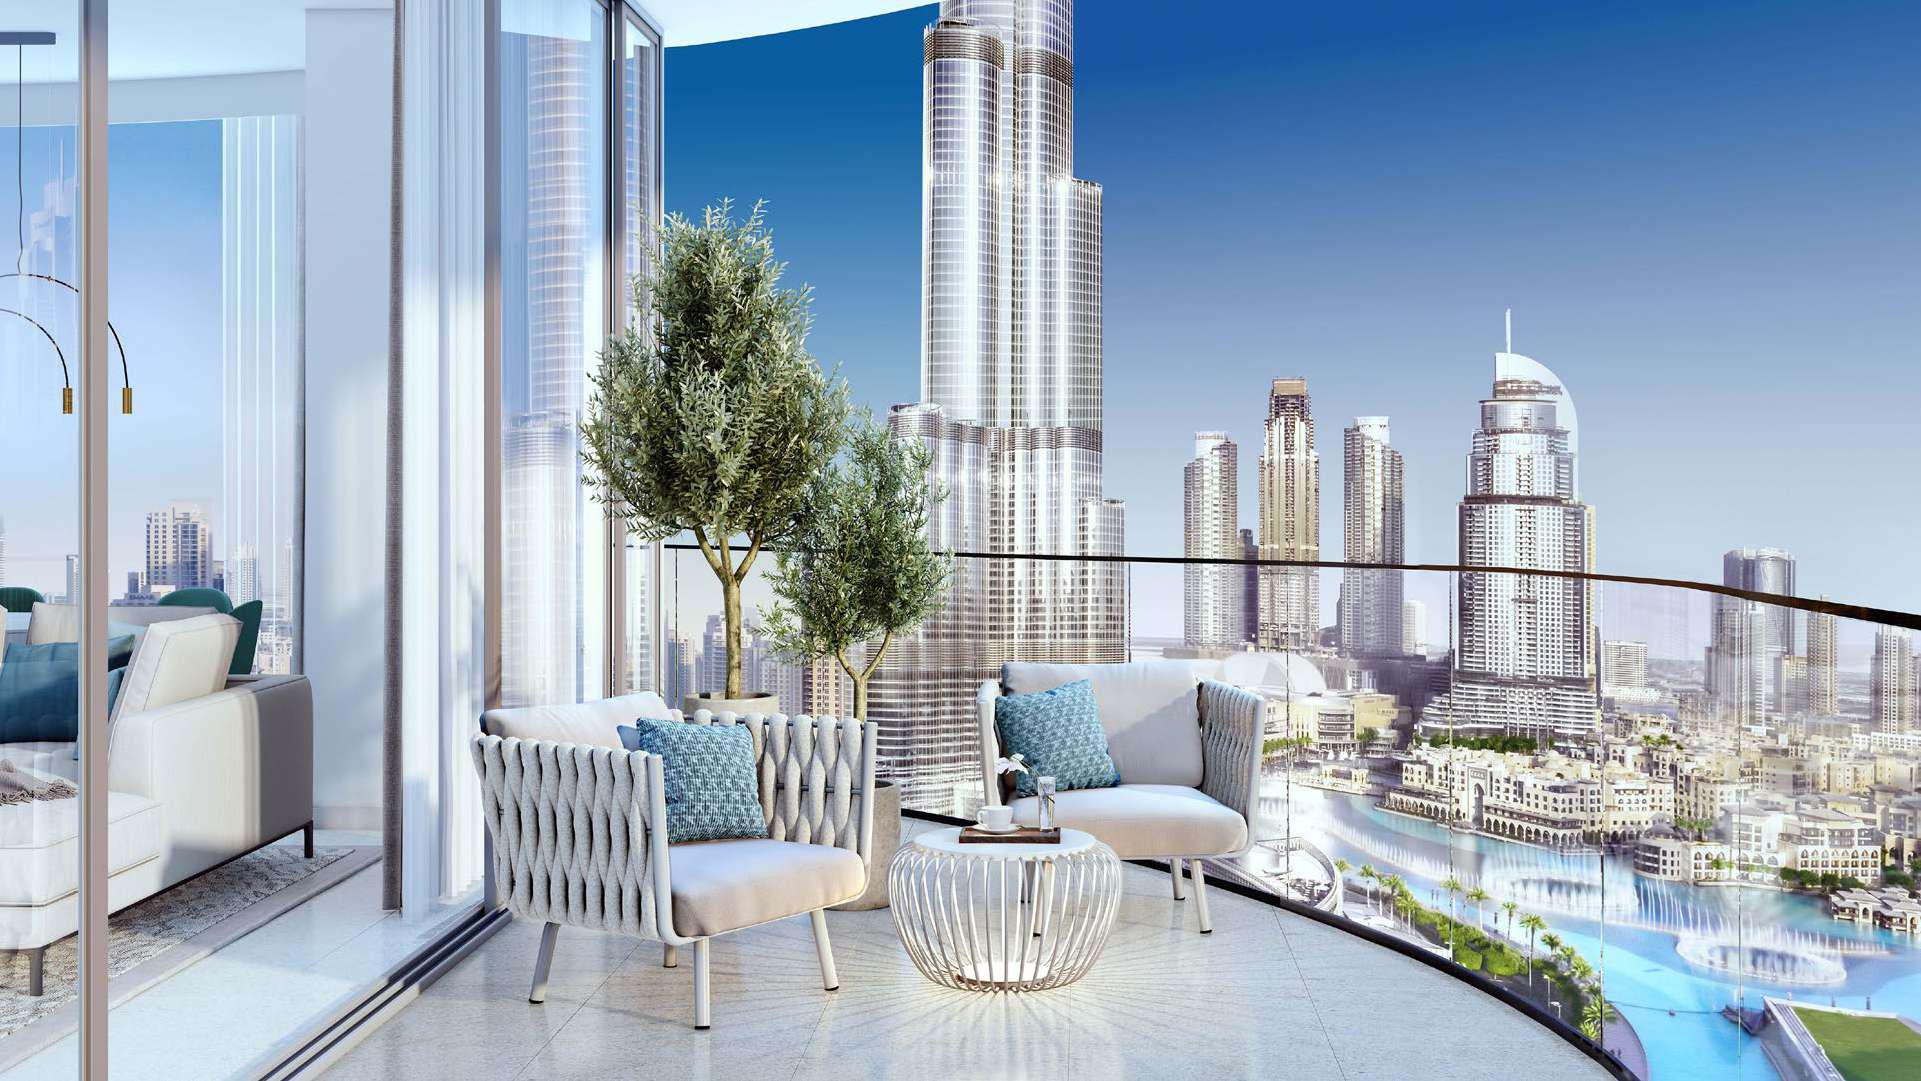 آپارتمان های گرند رزیدنس در مرکز شهر دبی | املاک اعمار پراپرتیز